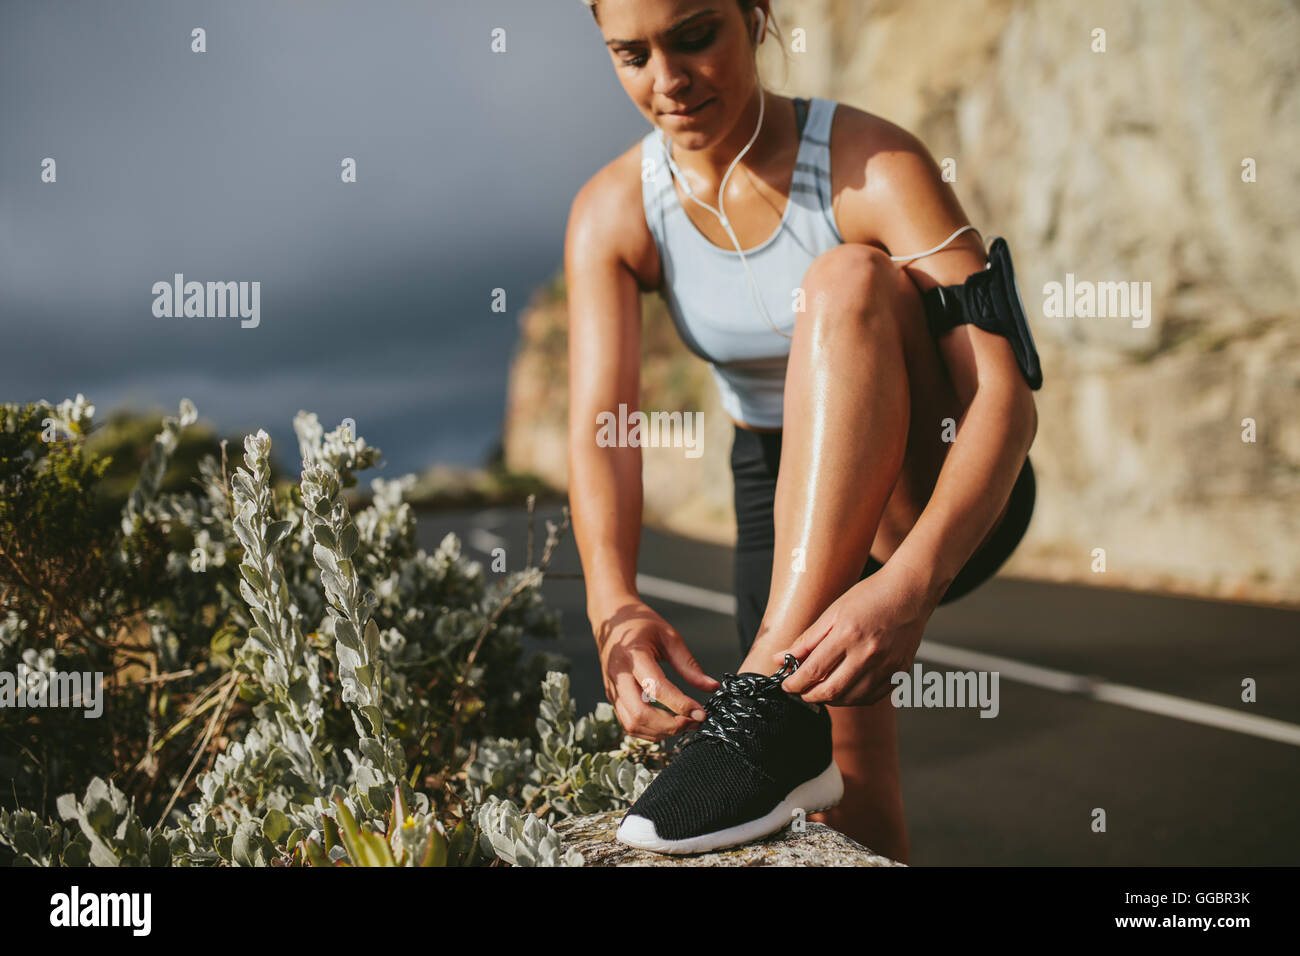 Frau schnürt Laufschuhe im Freien auf der Landstraße. Fitness und gesundes Lifestyle-Konzept. Stockfoto